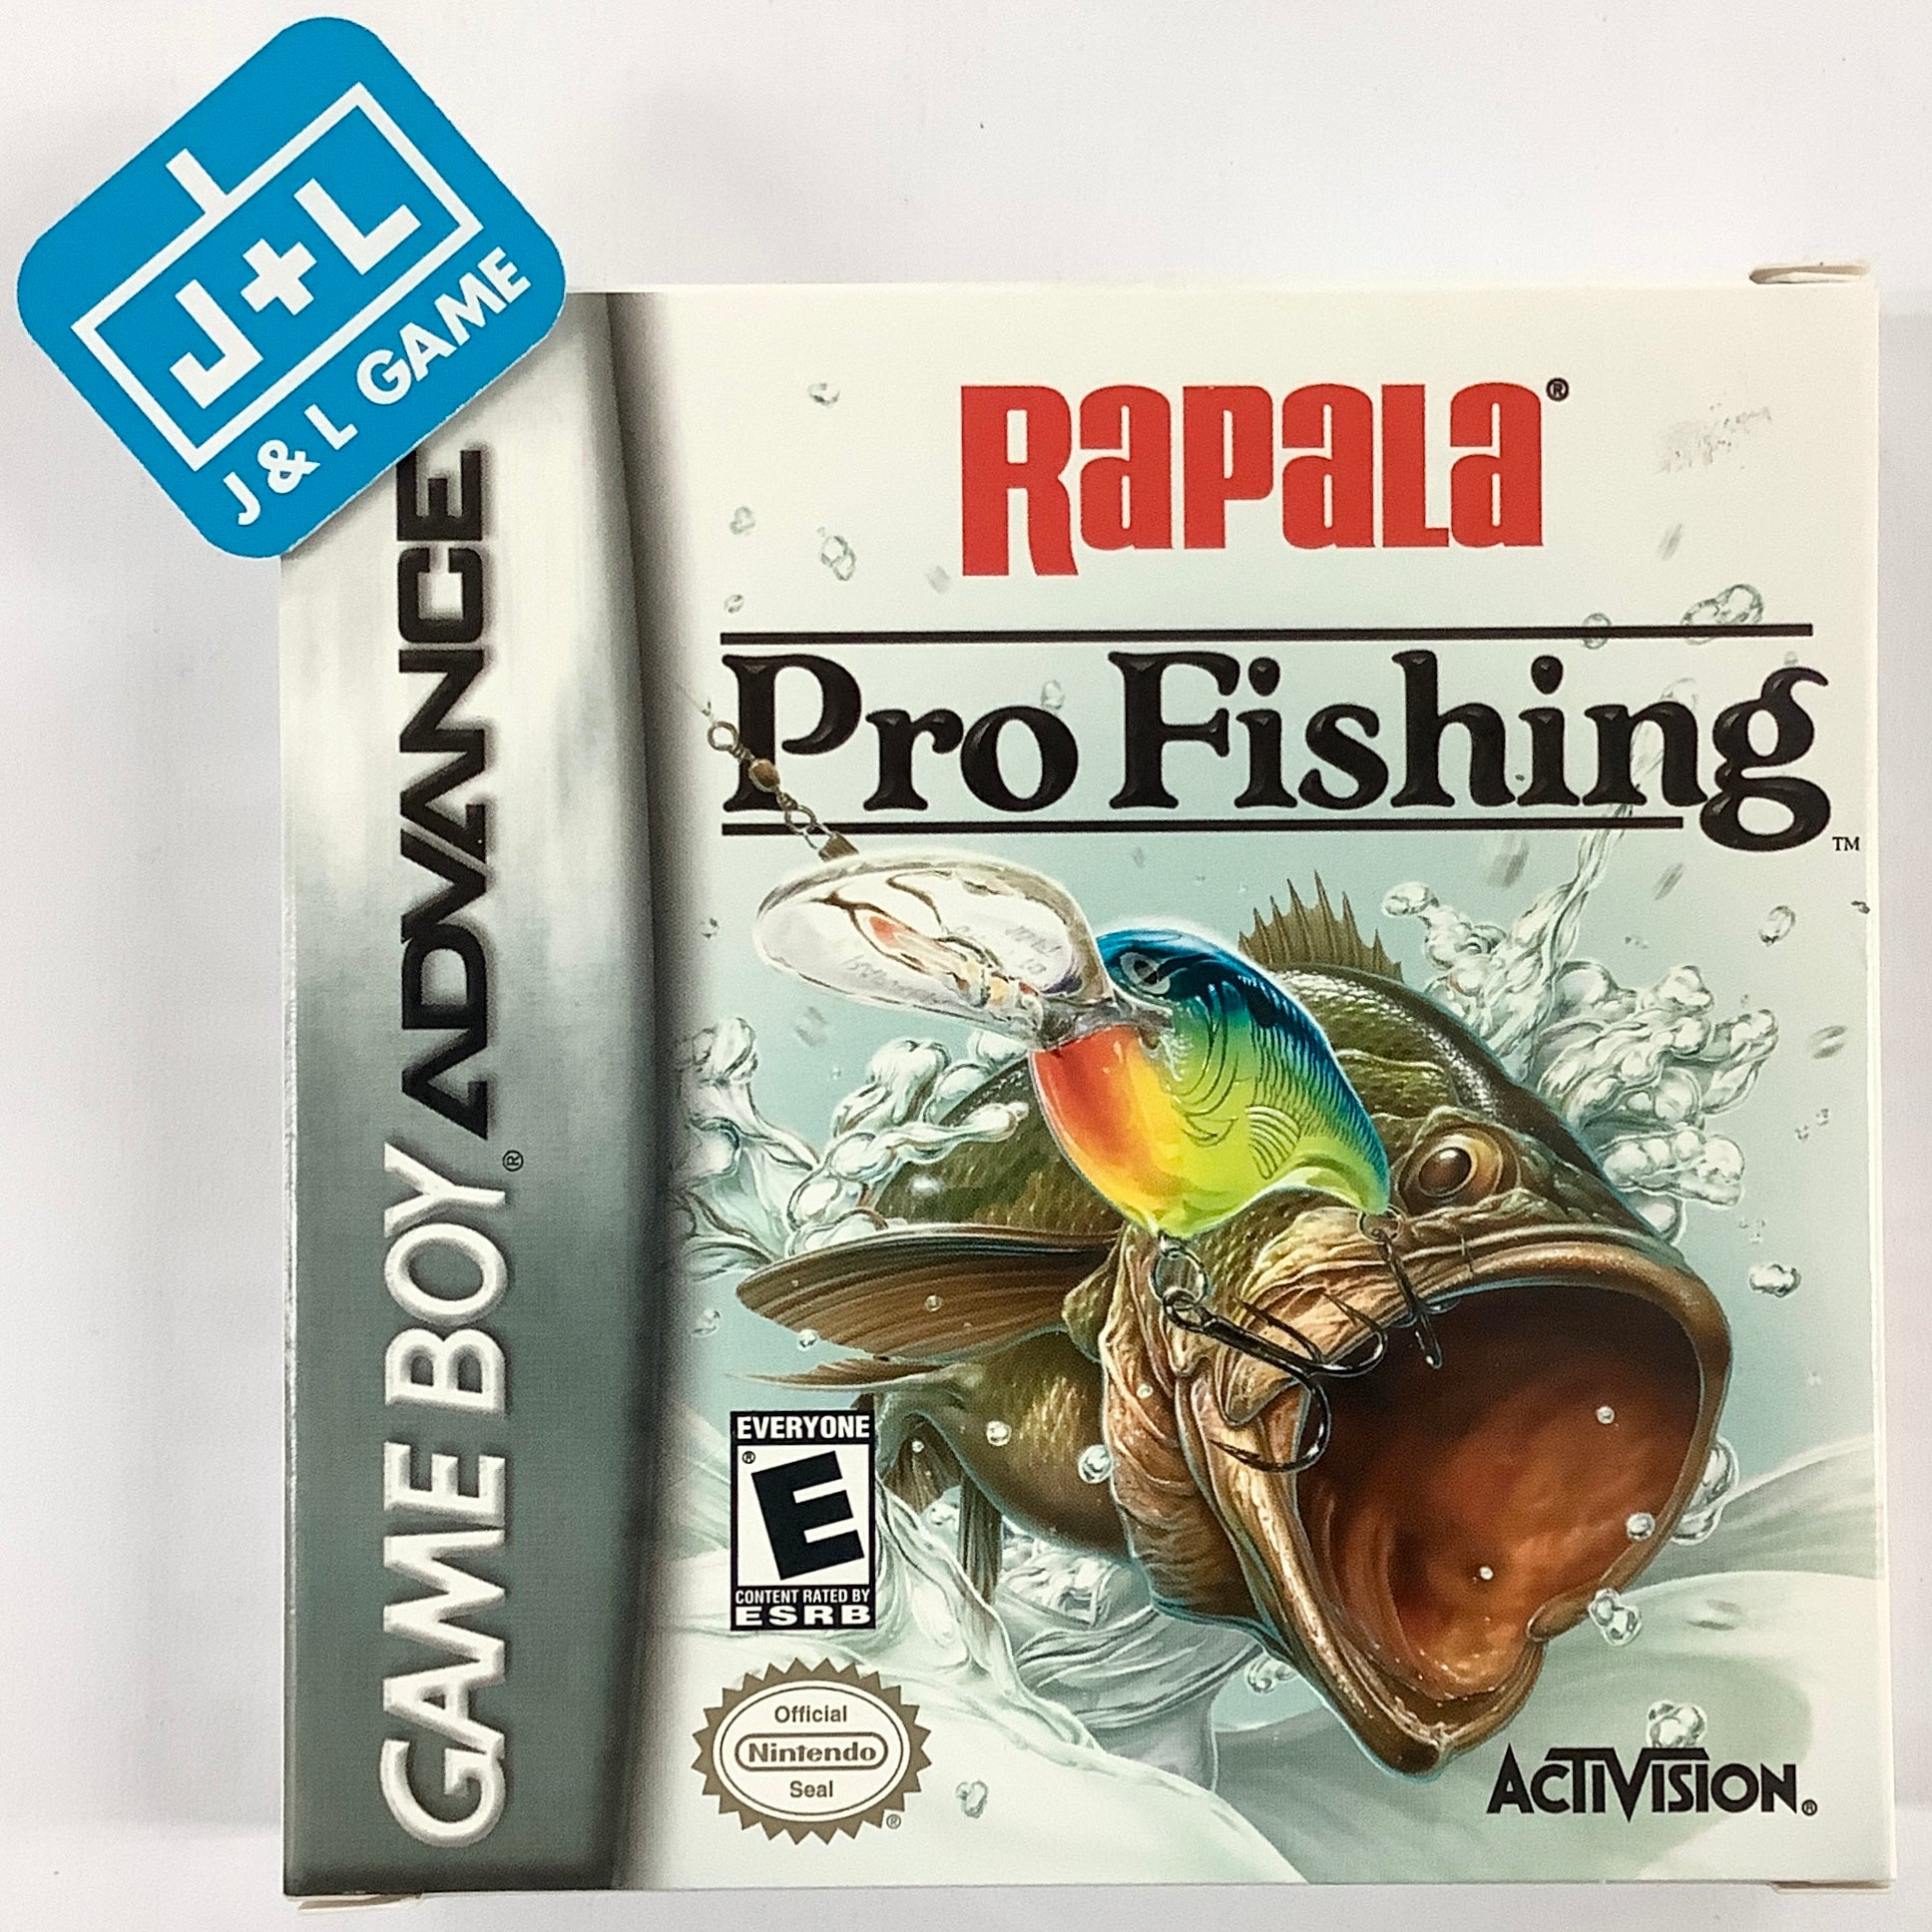 Rapalas Pro Fishing - PlayStation 2